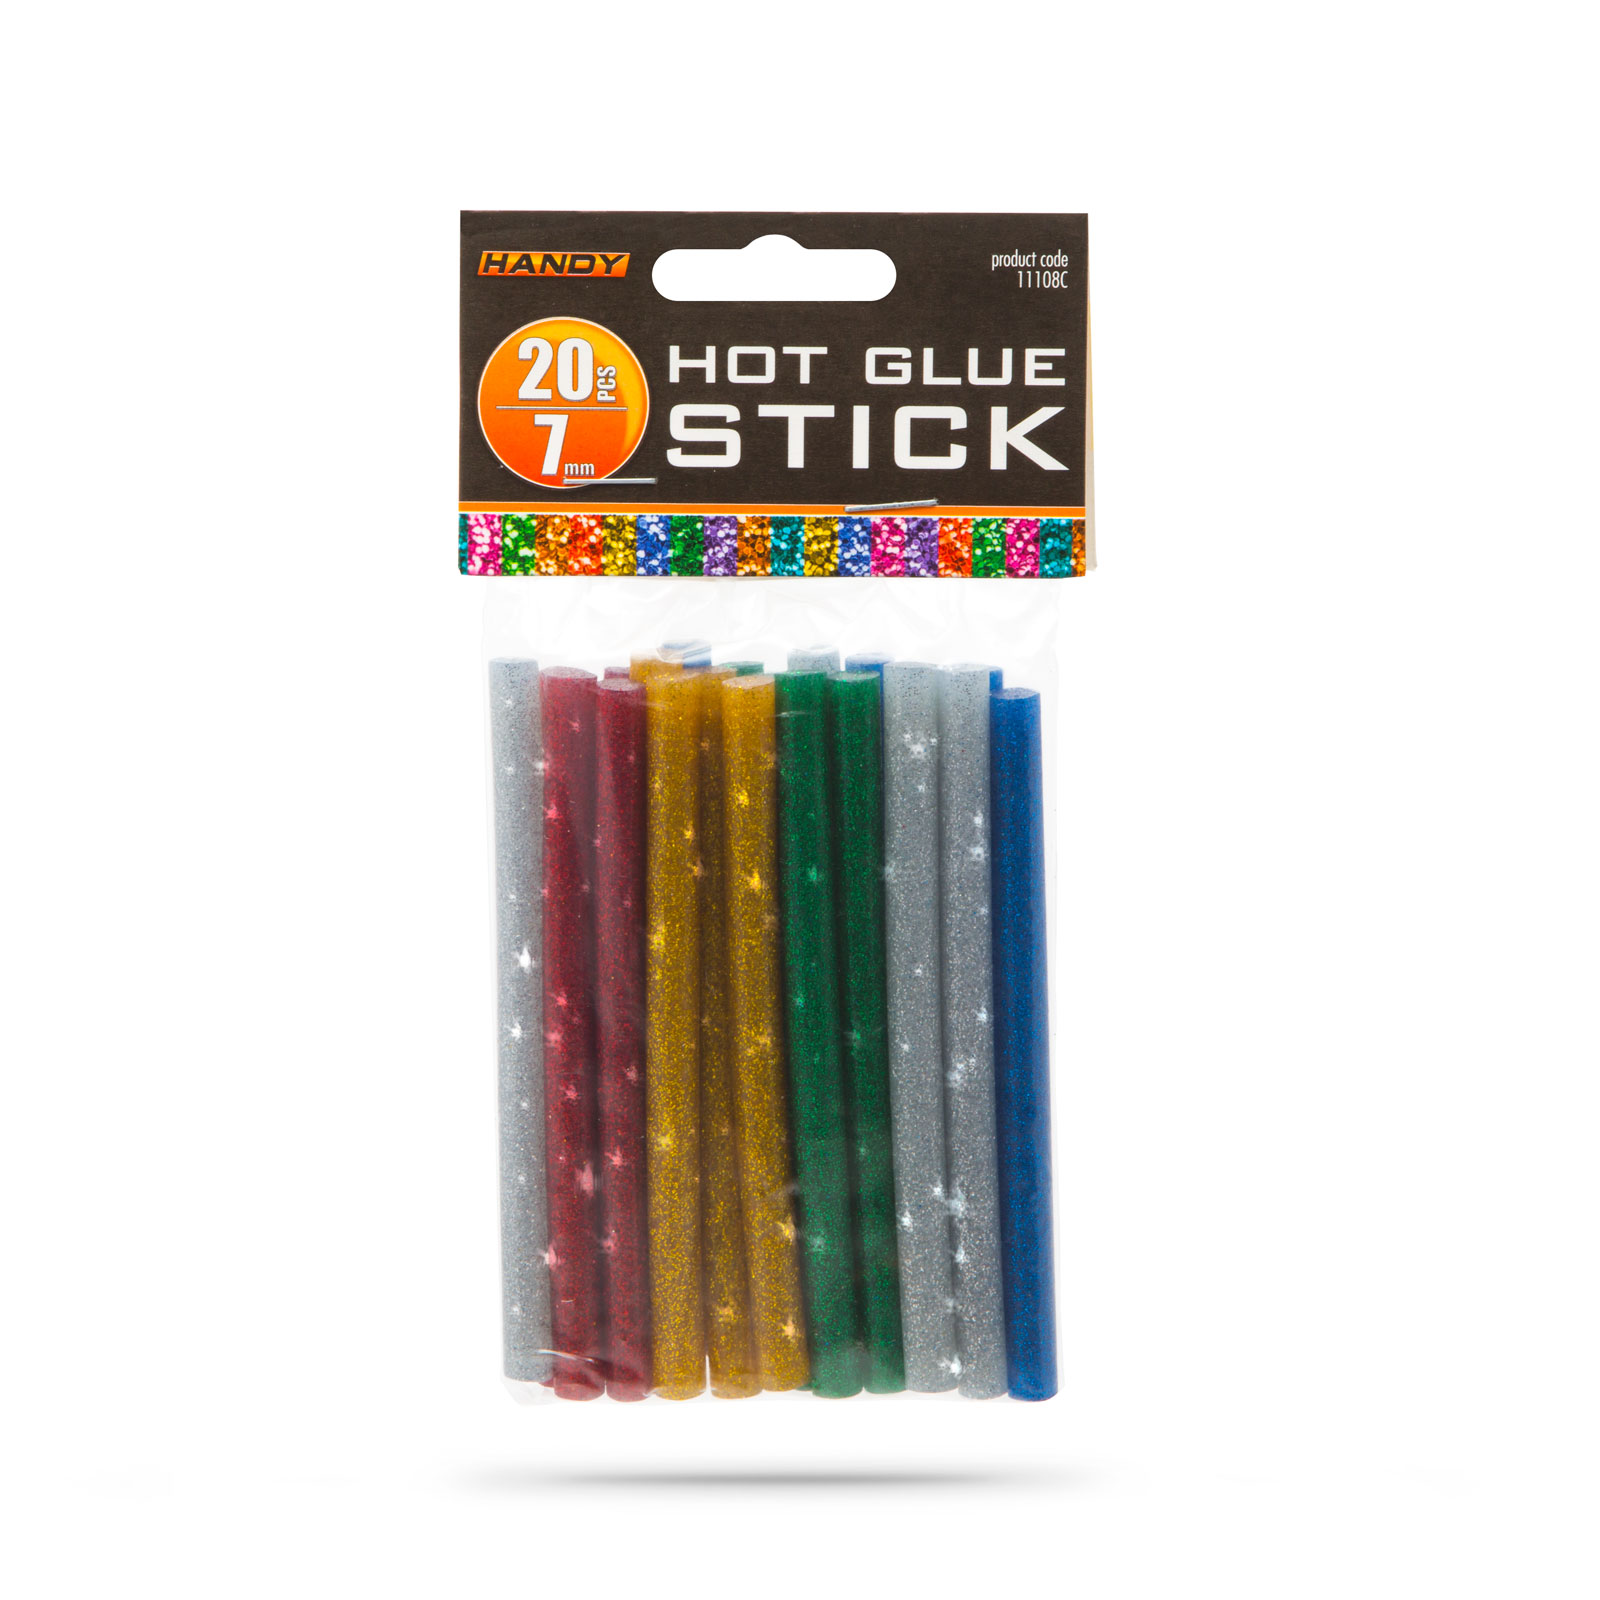 Hot glue stick - 7mm - glittering thumb